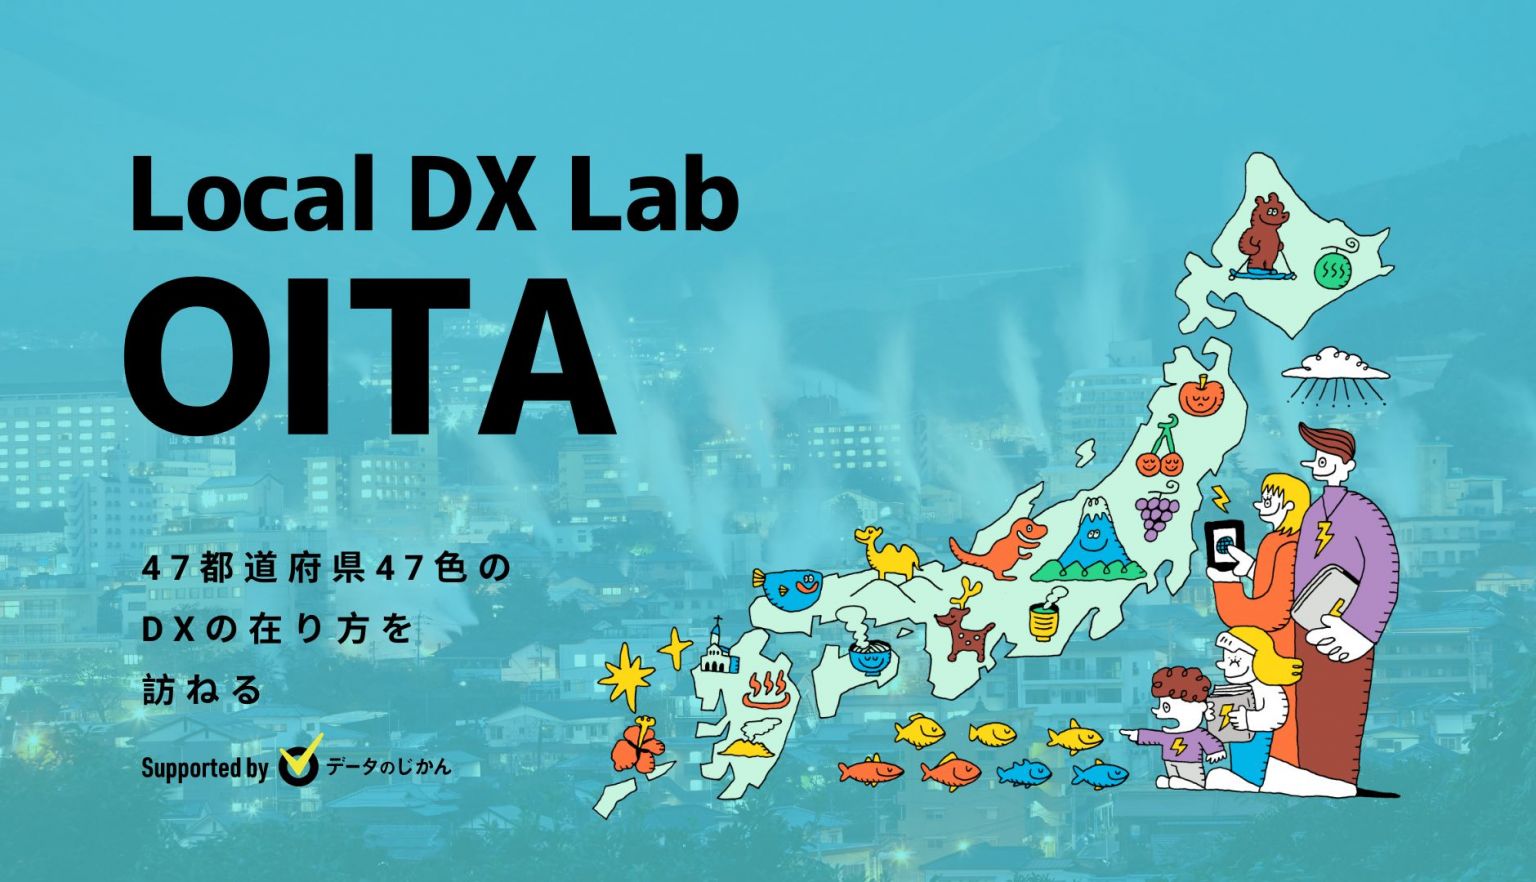 大分県の地域DX・デジタル化支援一覧47都道府県47色のDXの在り方を訪ねるLocalDXLab